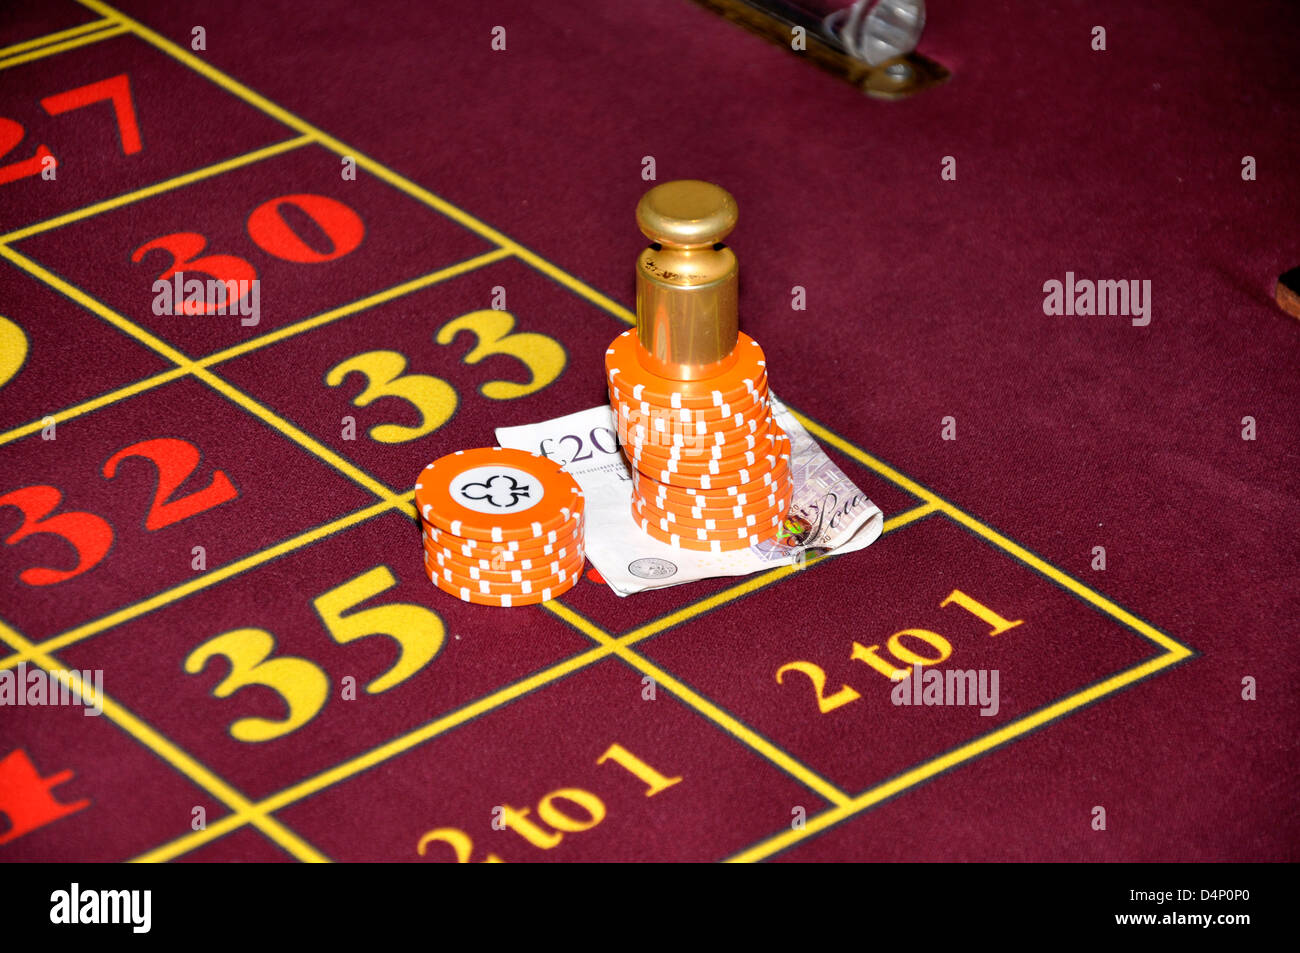 Casino Di Scommessa di denaro di venti libbre fiches del casinò roulette arancione Foto Stock